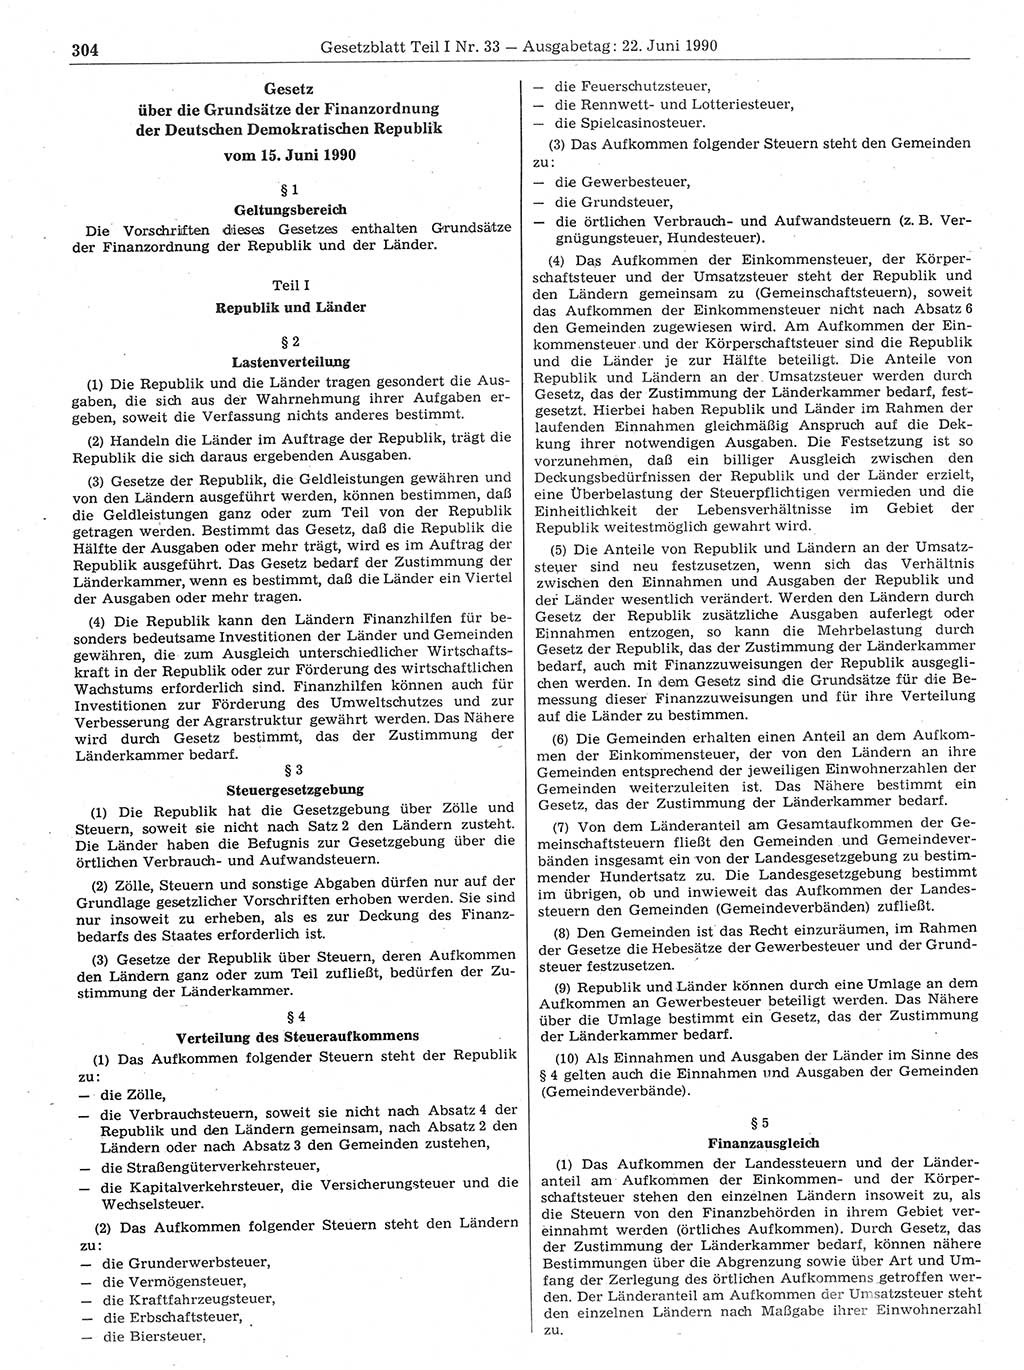 Gesetzblatt (GBl.) der Deutschen Demokratischen Republik (DDR) Teil Ⅰ 1990, Seite 304 (GBl. DDR Ⅰ 1990, S. 304)